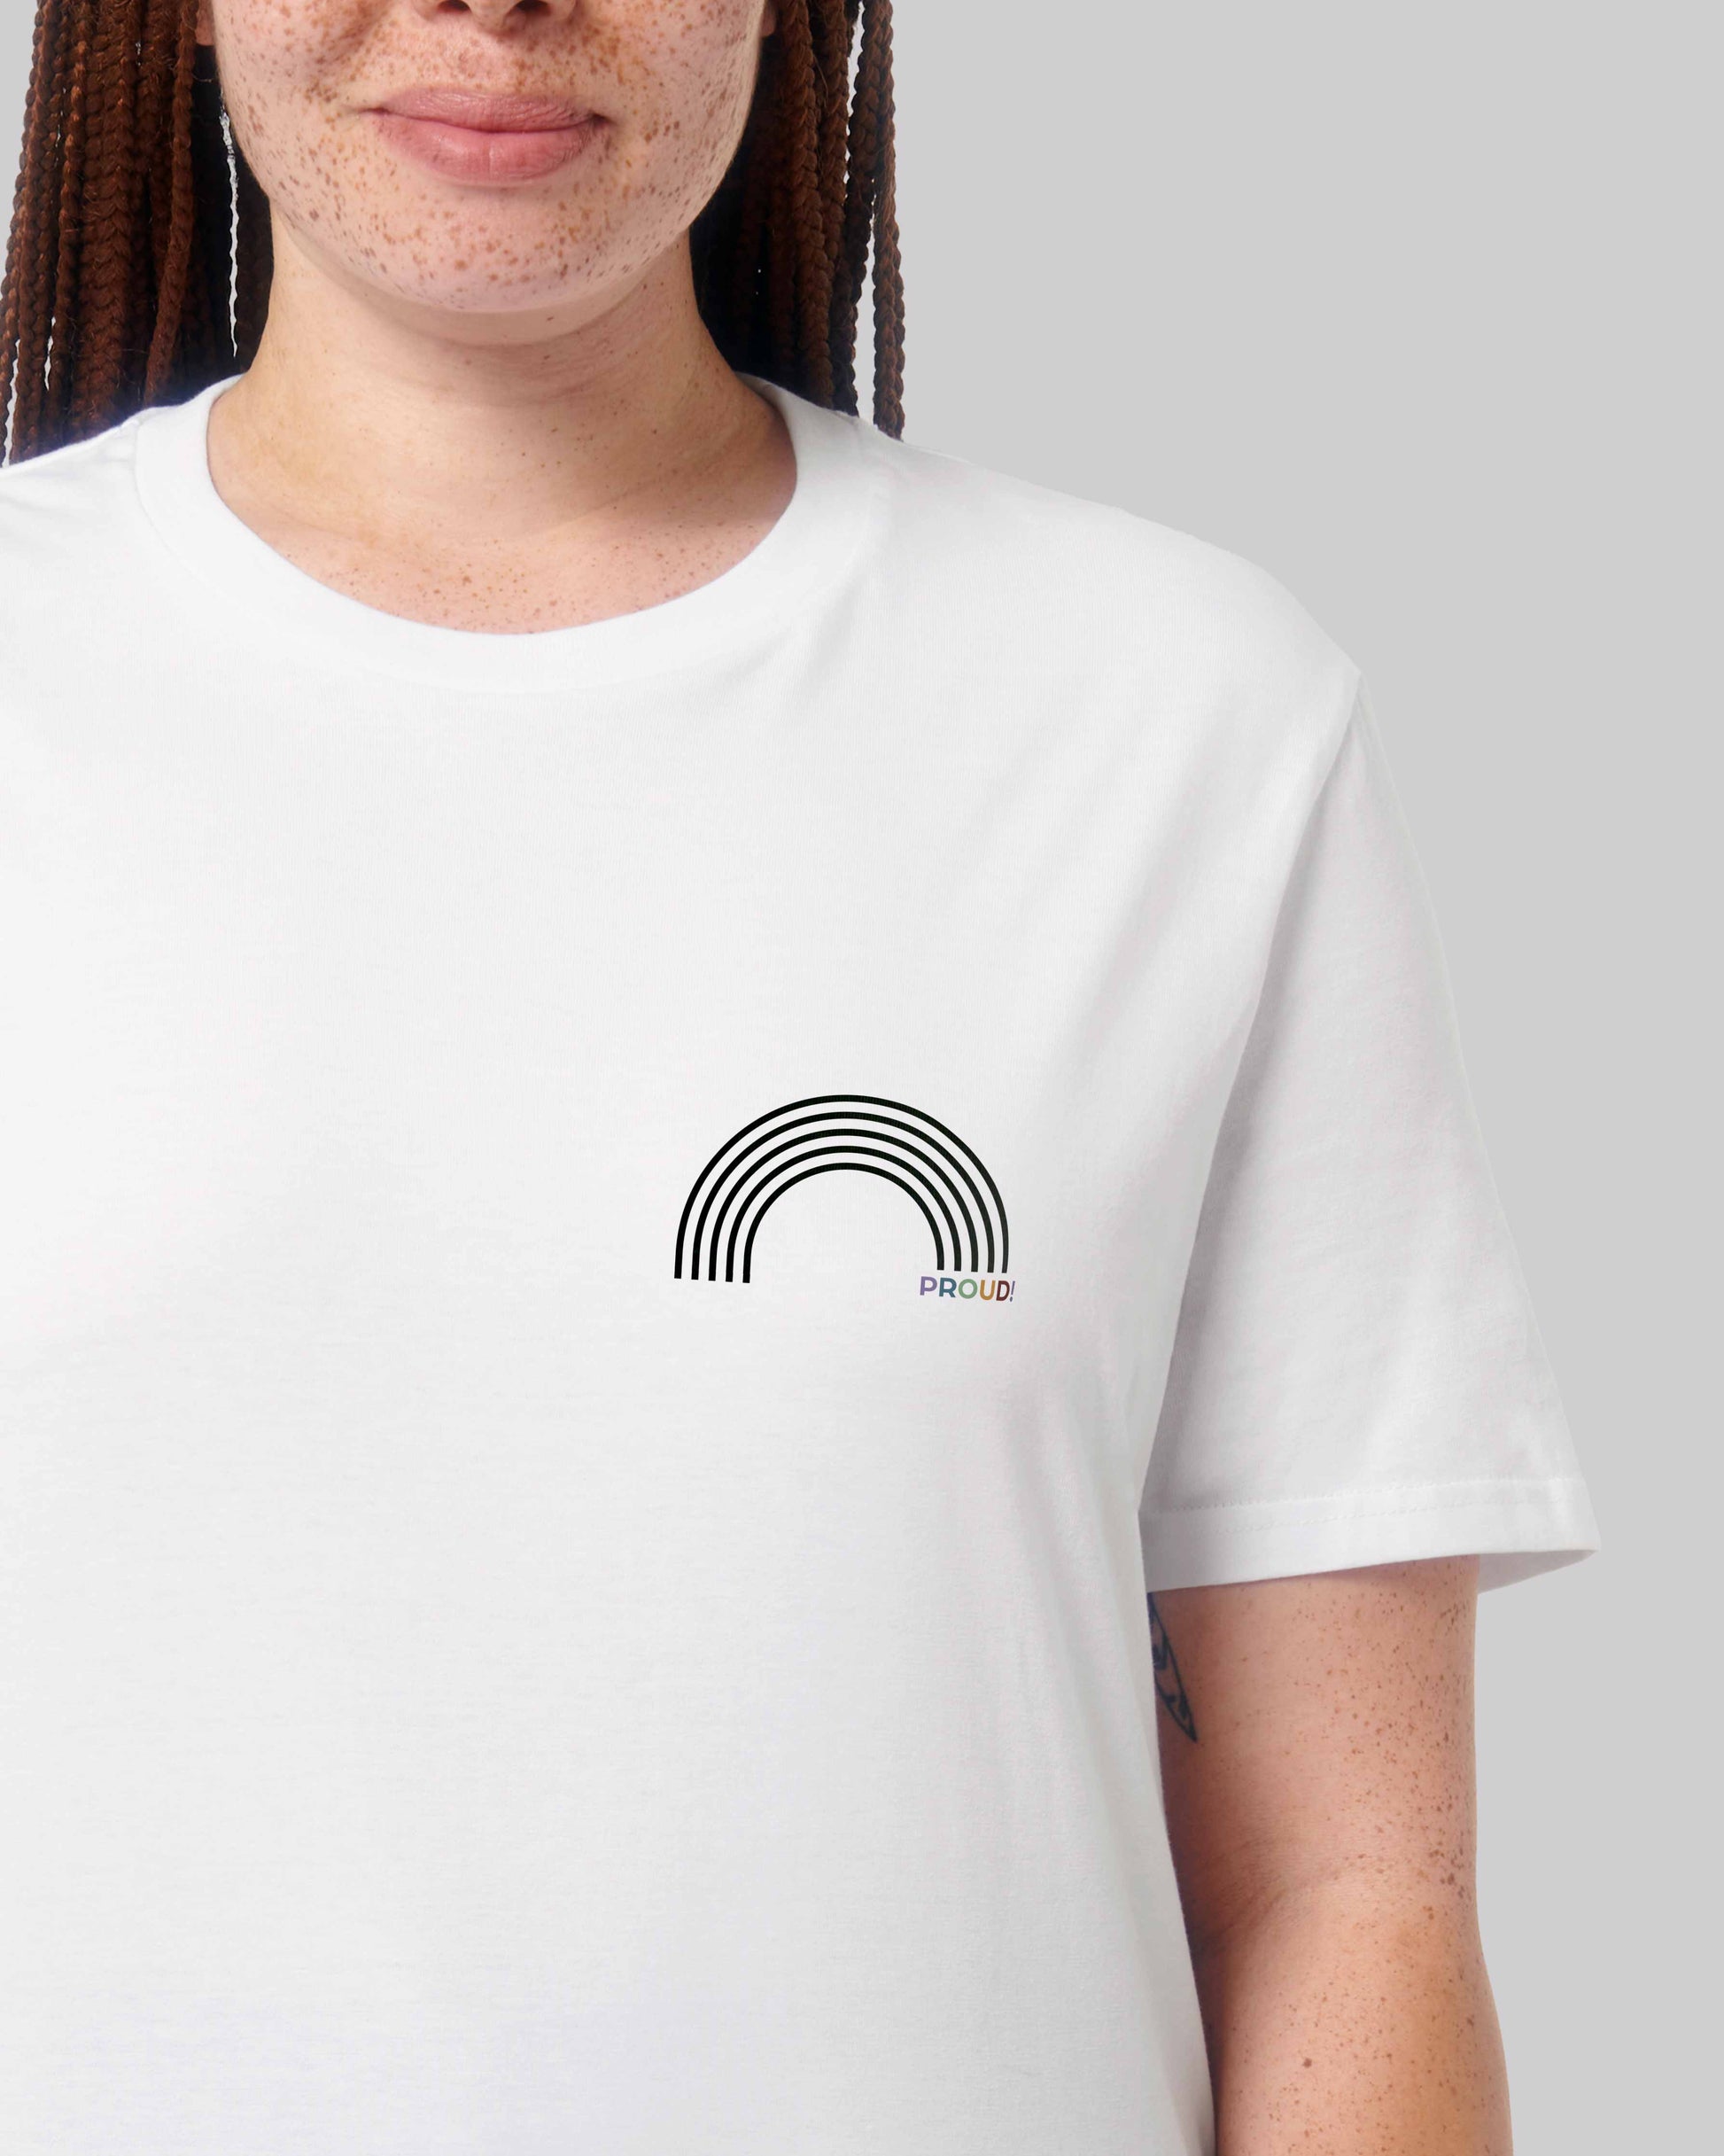 EINHORST® unisex Organic Shirt in Weiß mit dem Motiv "proud Regenbogen" in der Kombination schwarzer Regenbogen mit bunter Schrift, Bild von weiblicher Person mit Shirt